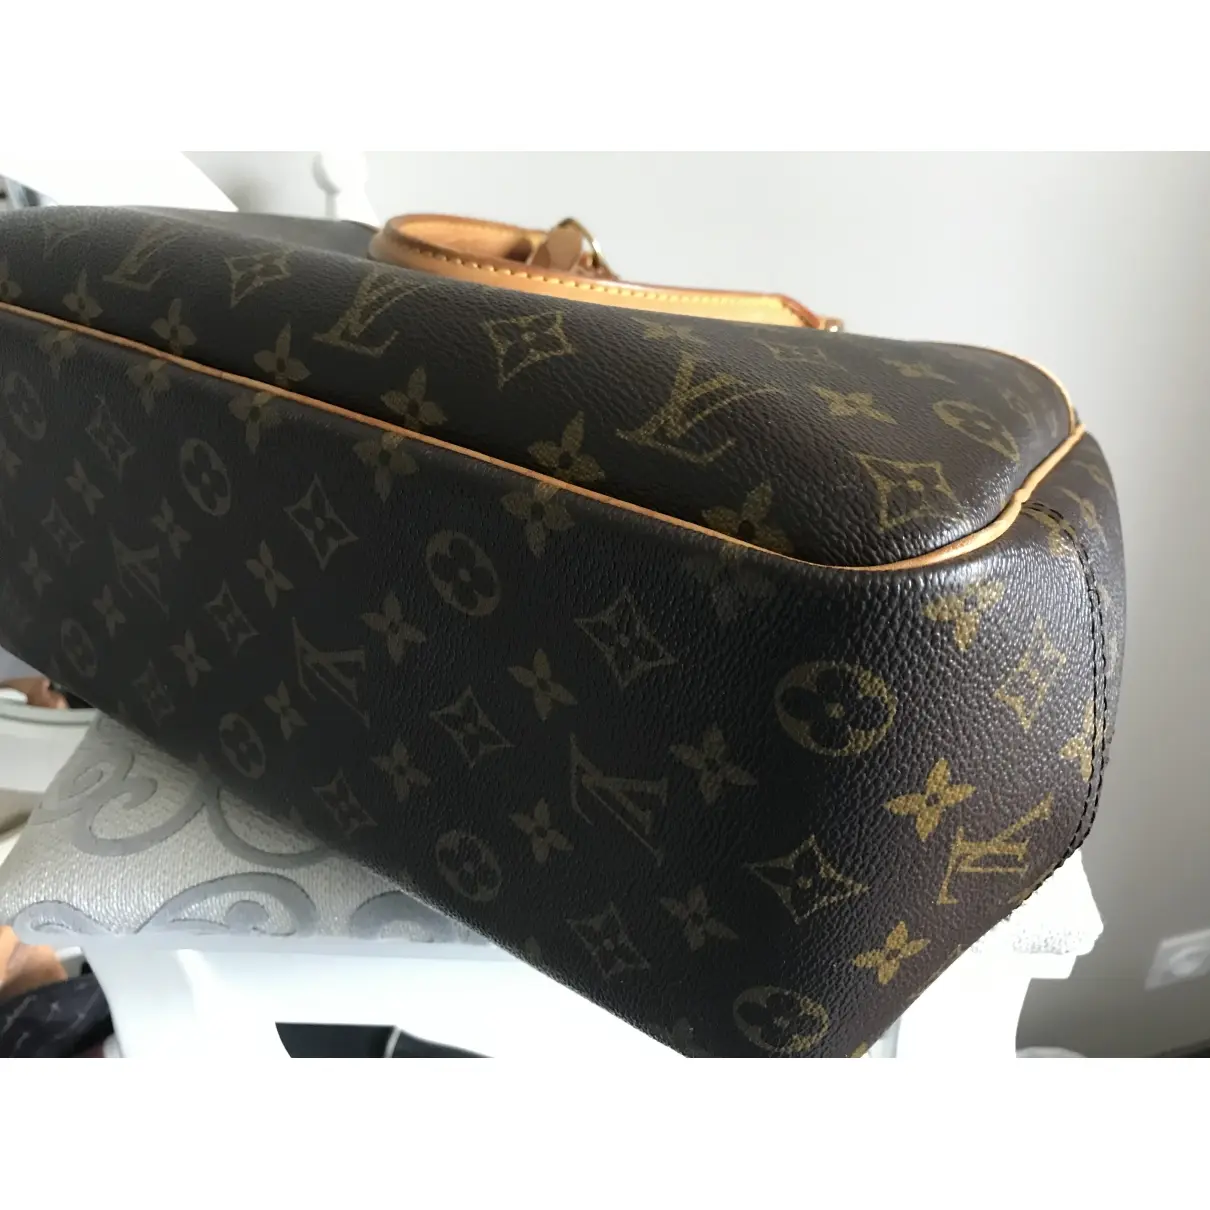 Vanity cloth handbag Louis Vuitton